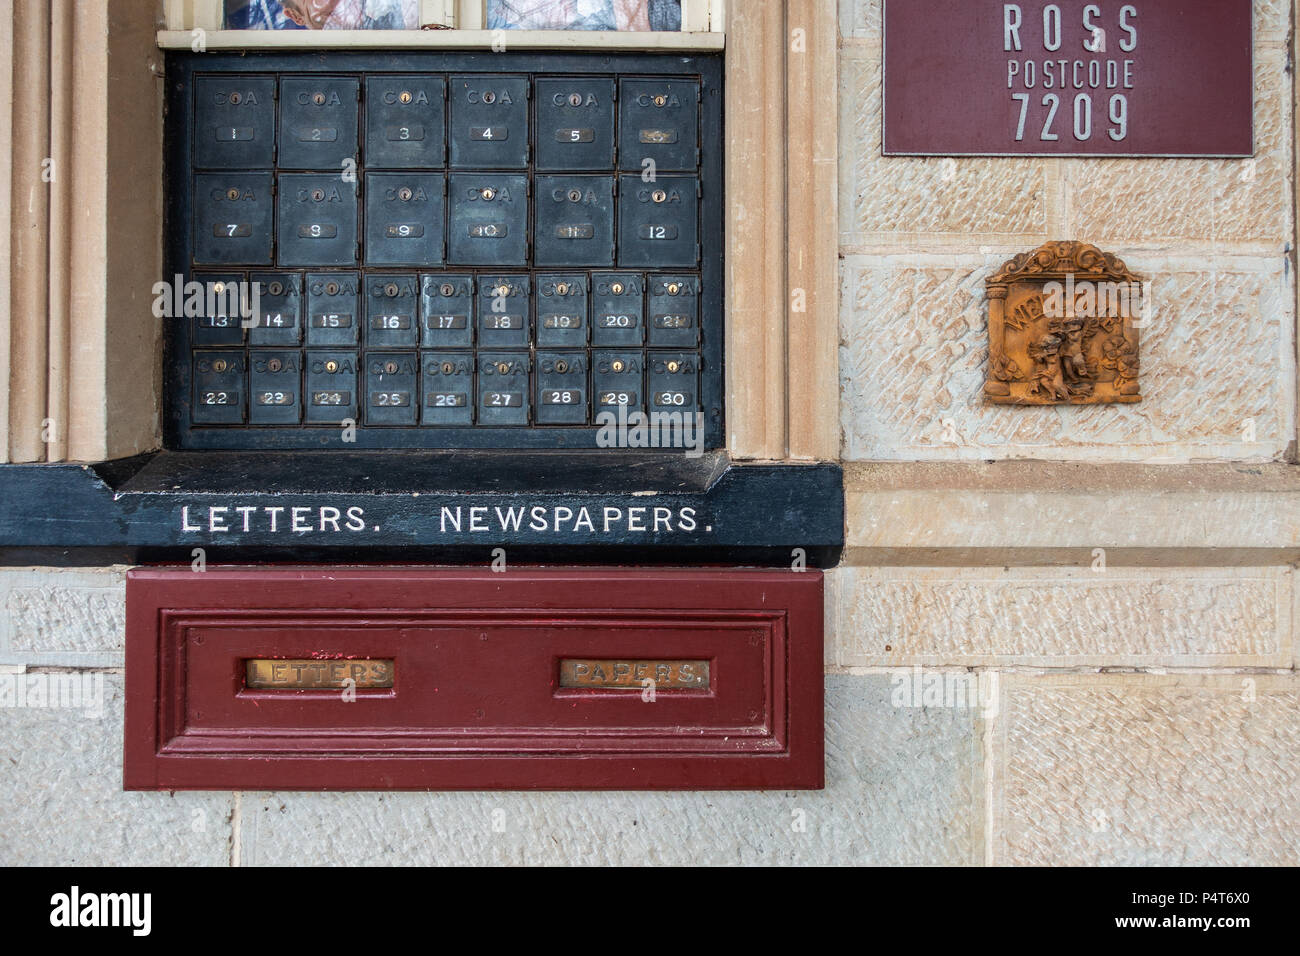 Caselle postali sulla parete del locale ufficio postale in città. Ross, Tasmania, Australia Foto Stock